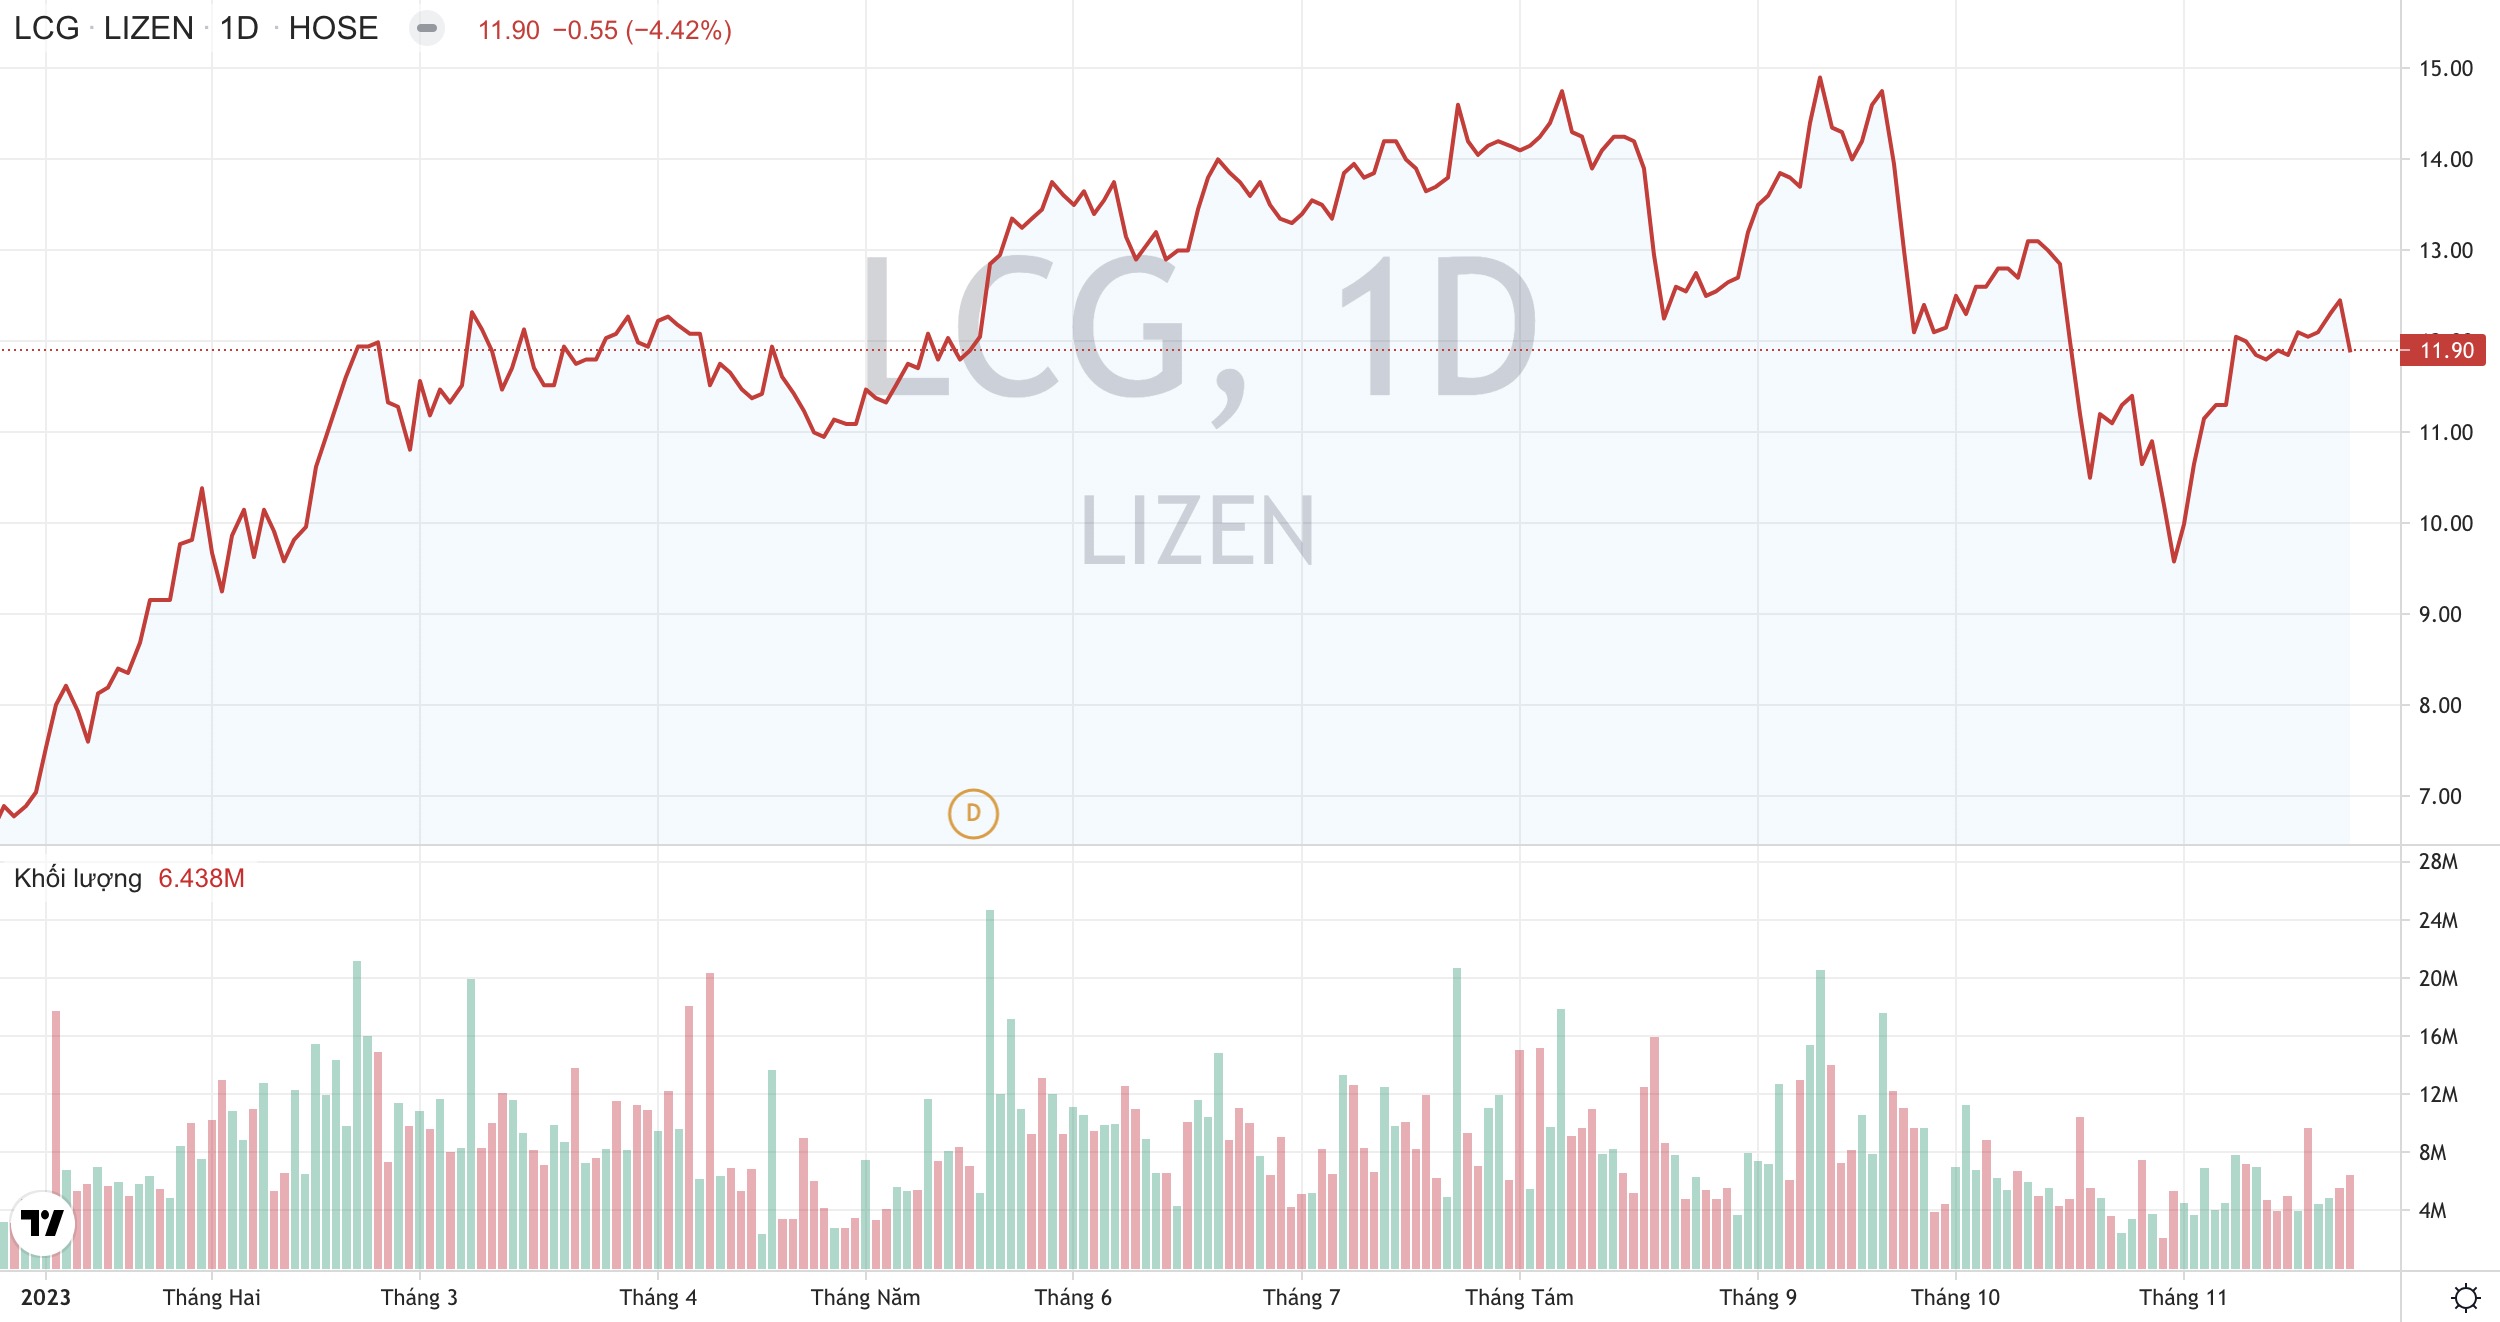 Liên danh của Công ty Lizen LCG trúng gói thầu trị giá hơn 2.000 tỷ đồng 2